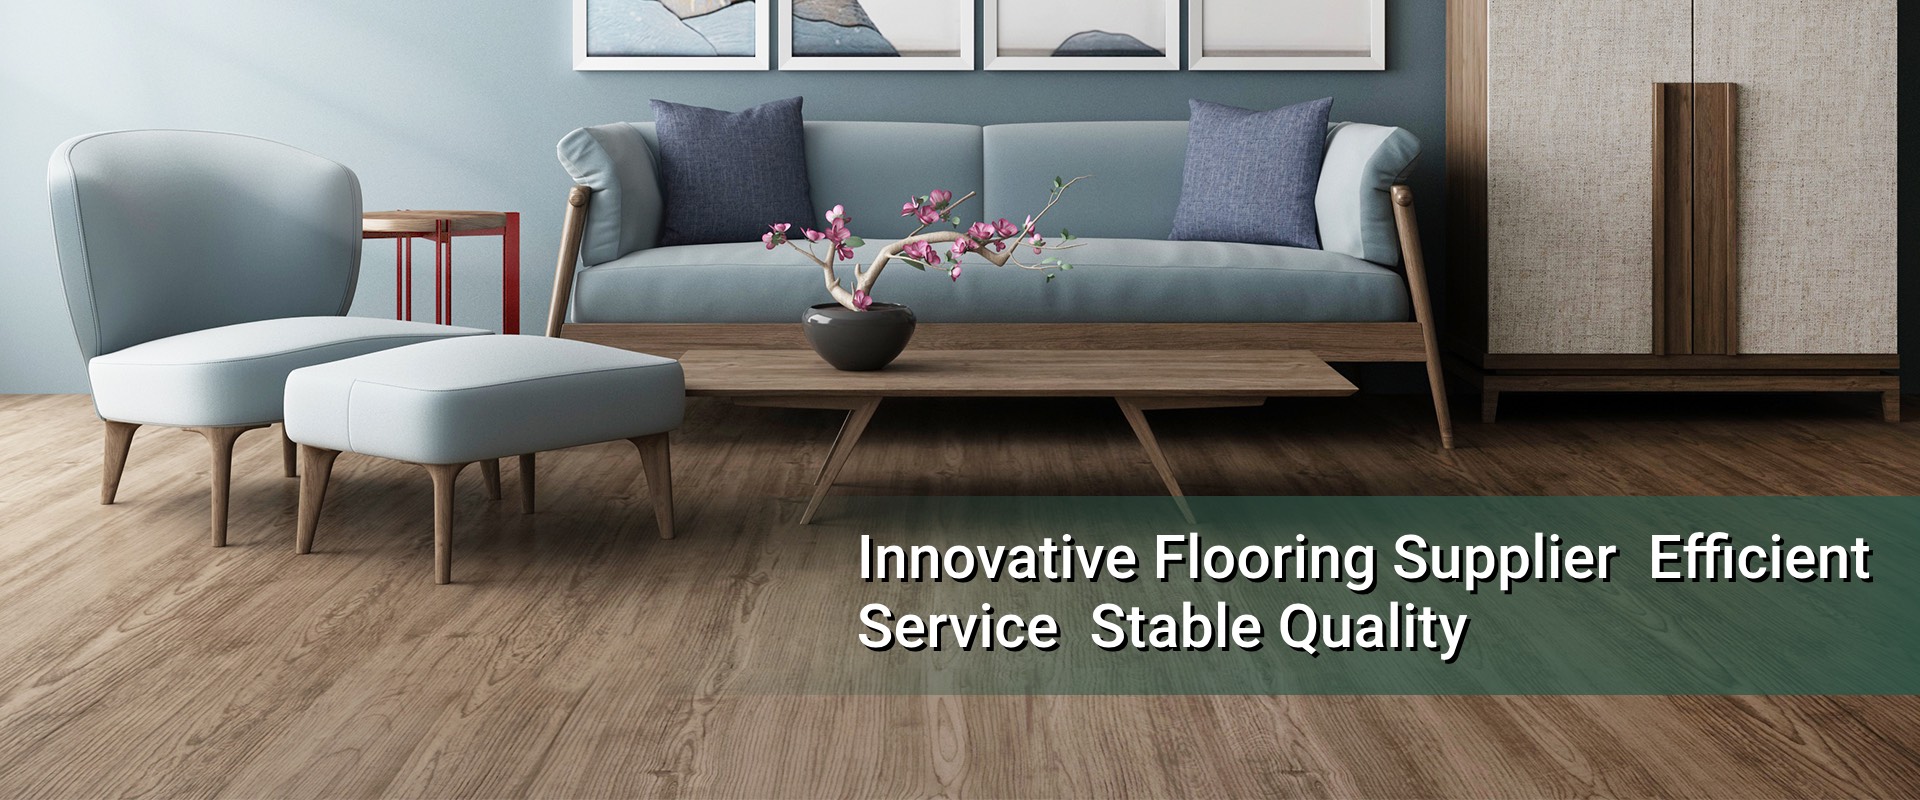 Innovative Flooring Supplier